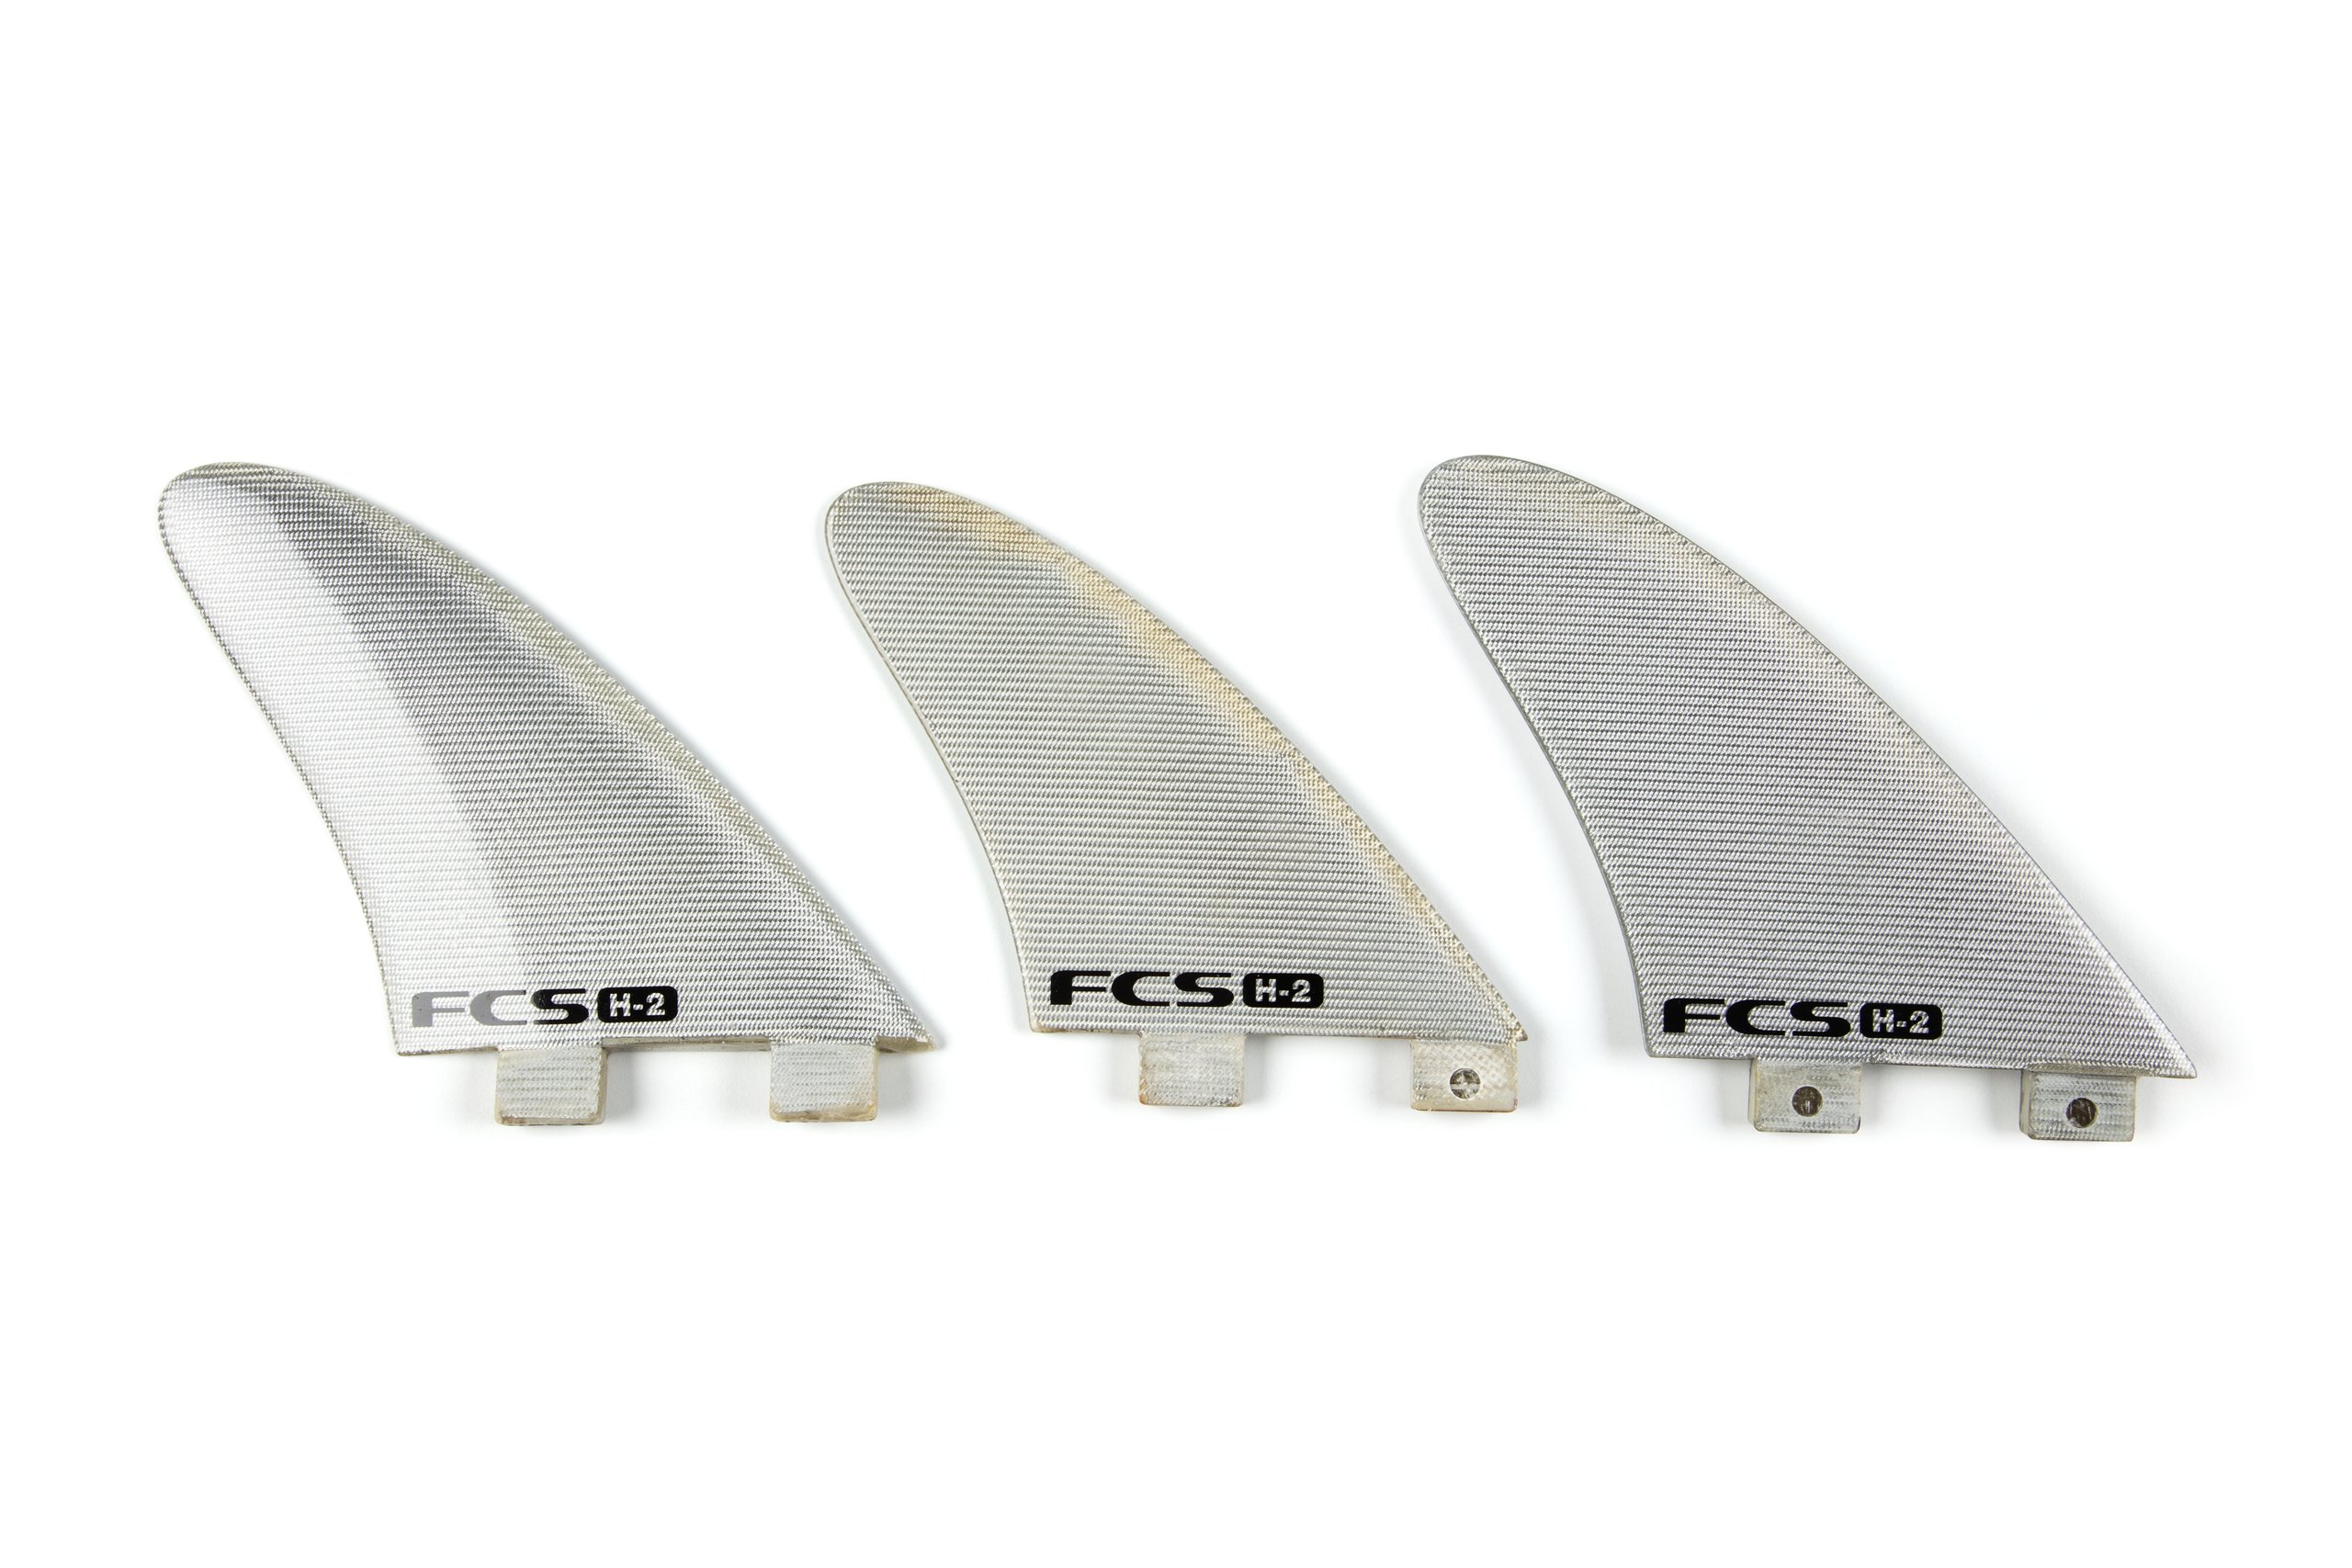 Three 'FCS H-2' surfboard fins